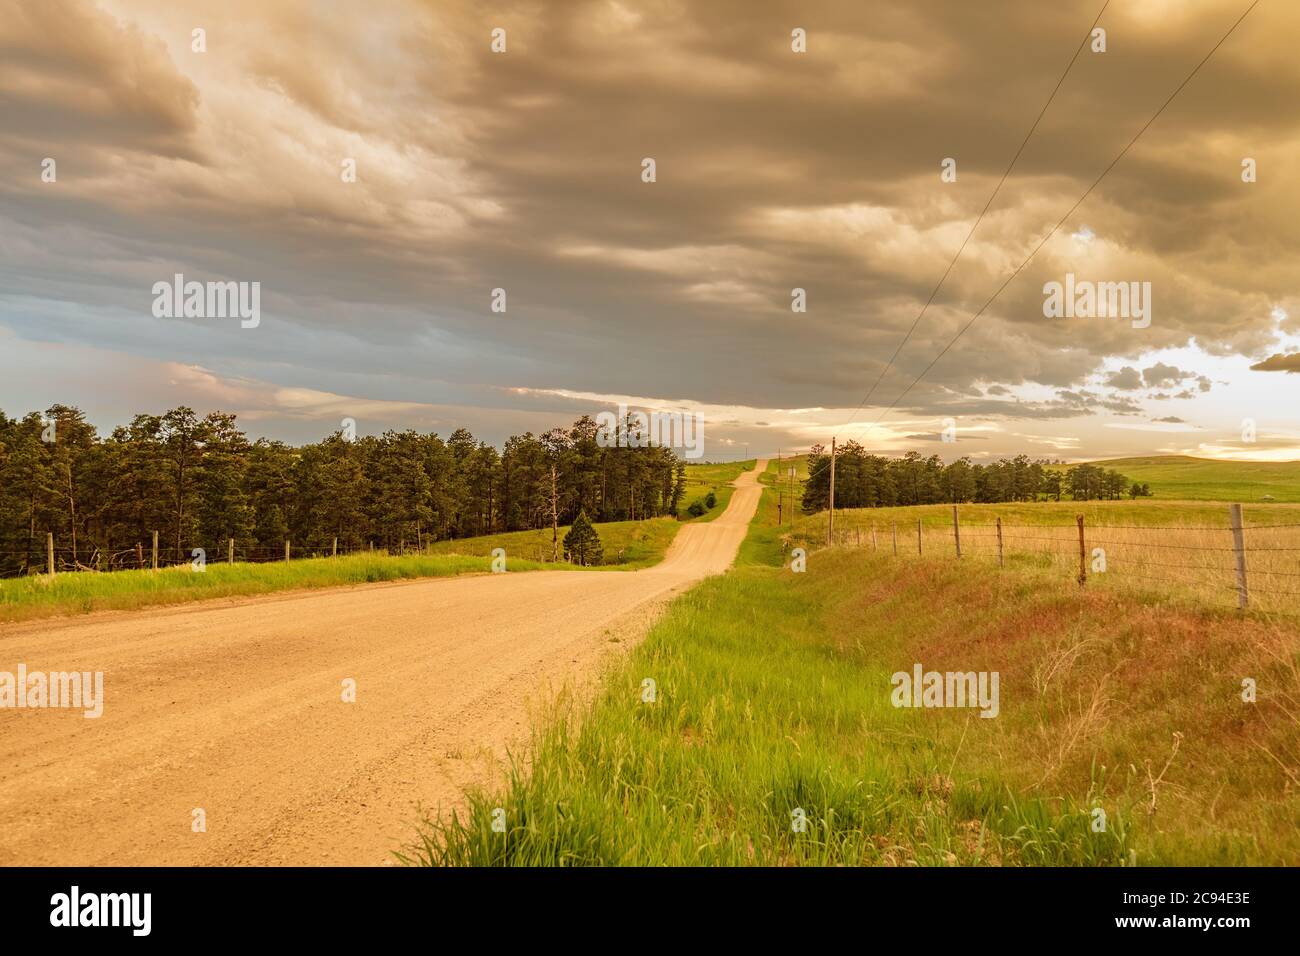 Immagine di una classica strada sterrata nel Midwest con una prospettiva della strada che non porta da nessuna parte. Foto Stock